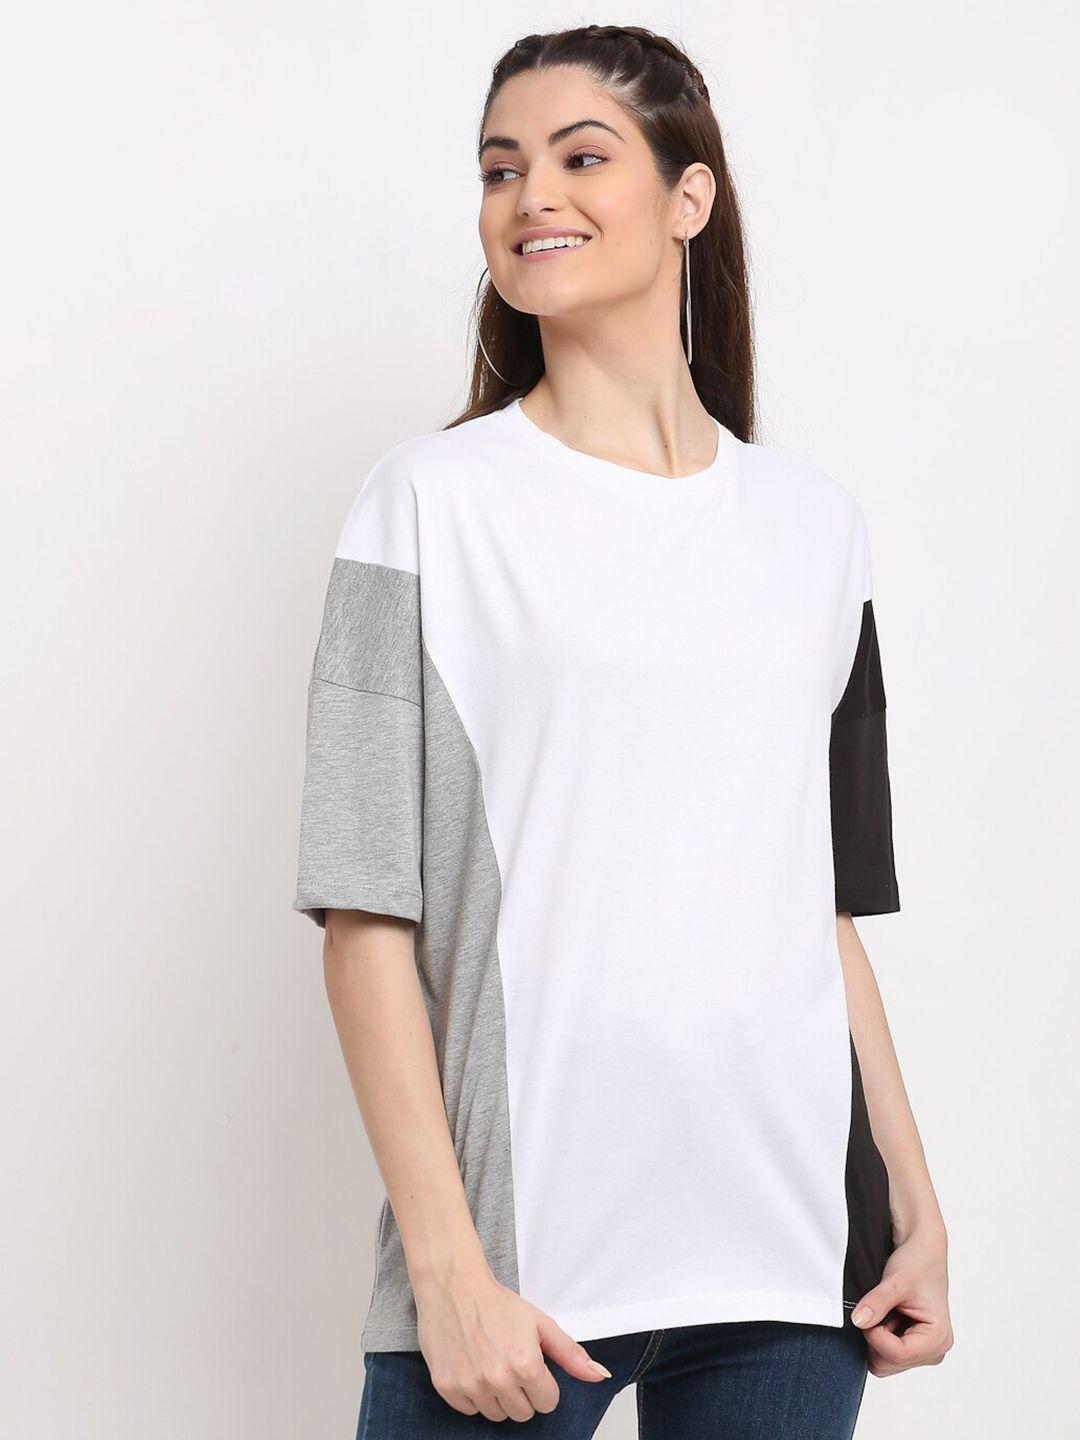 door74 women white & grey colourblocked drop-shoulder loose t-shirt